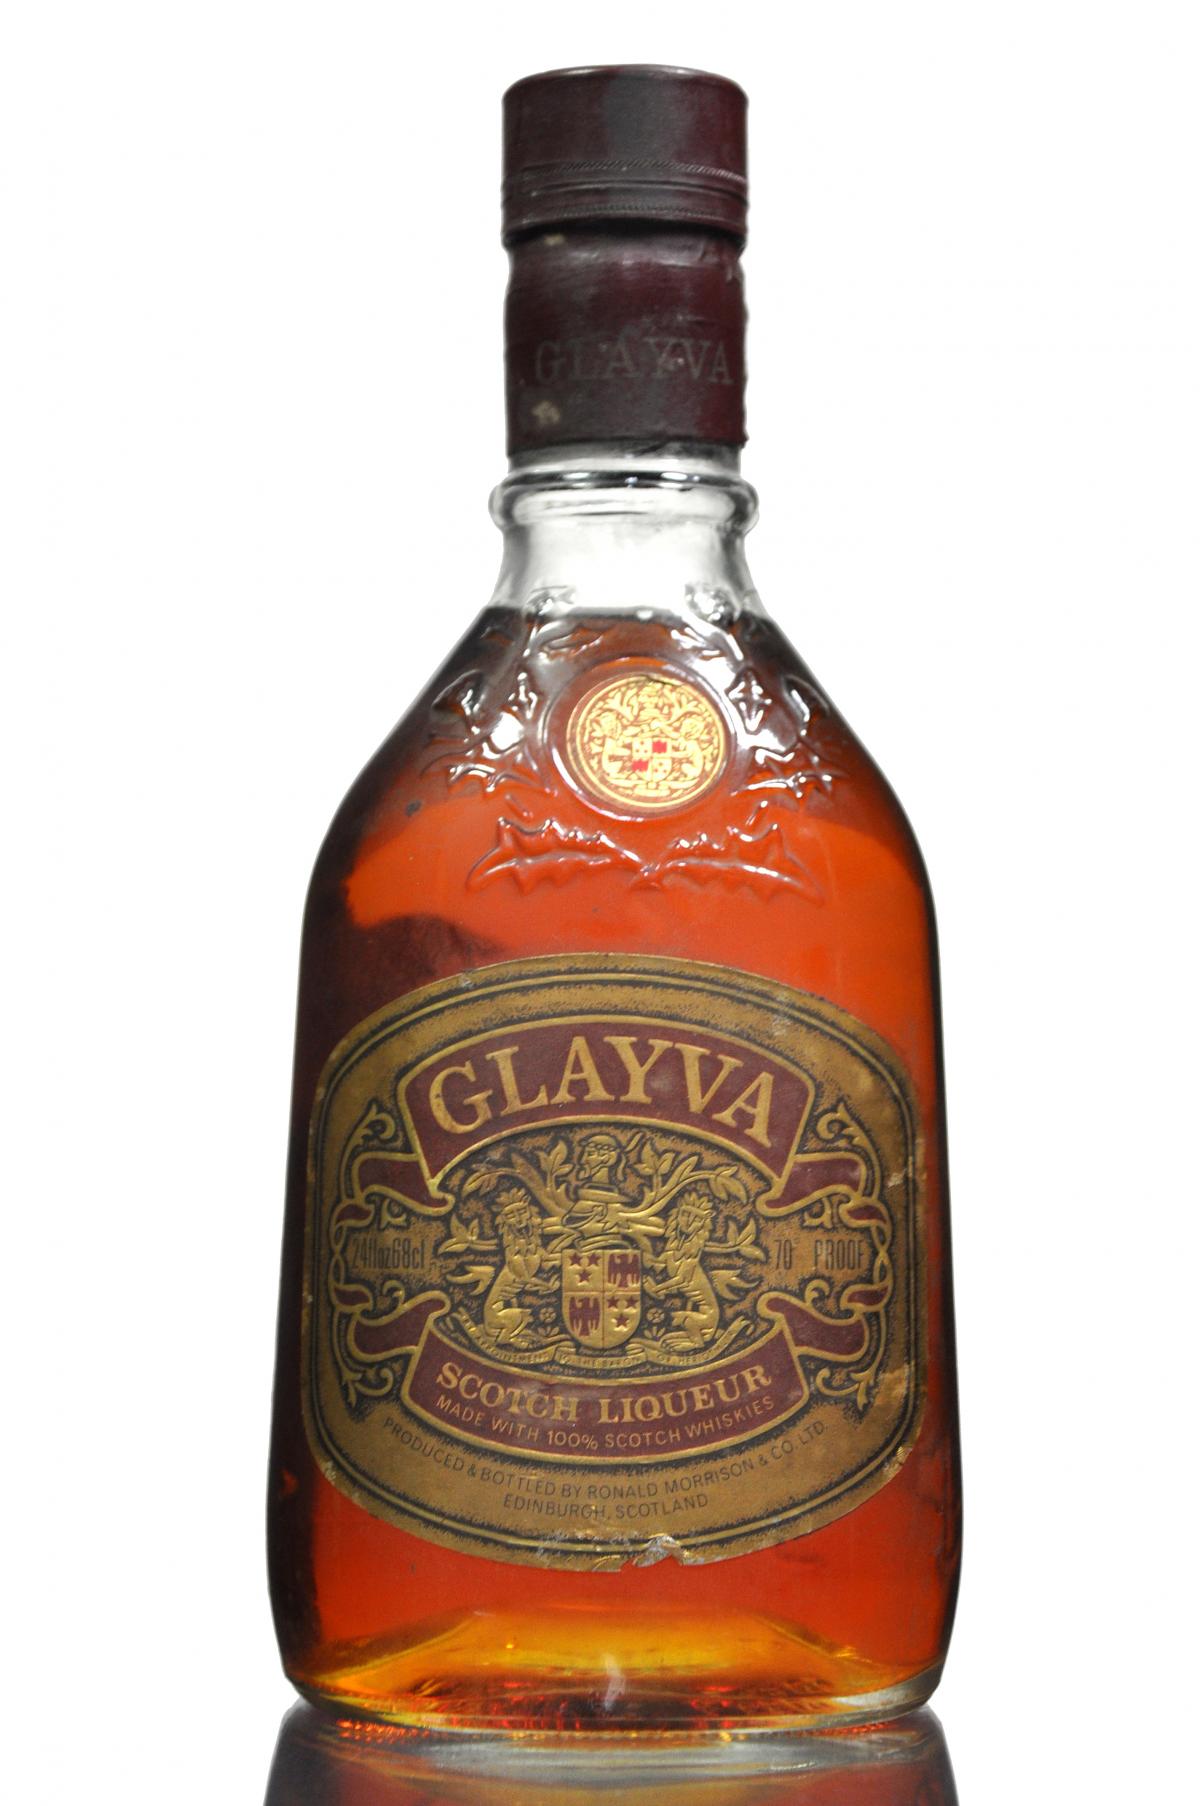 Glayva Liqueur - Late 1970s